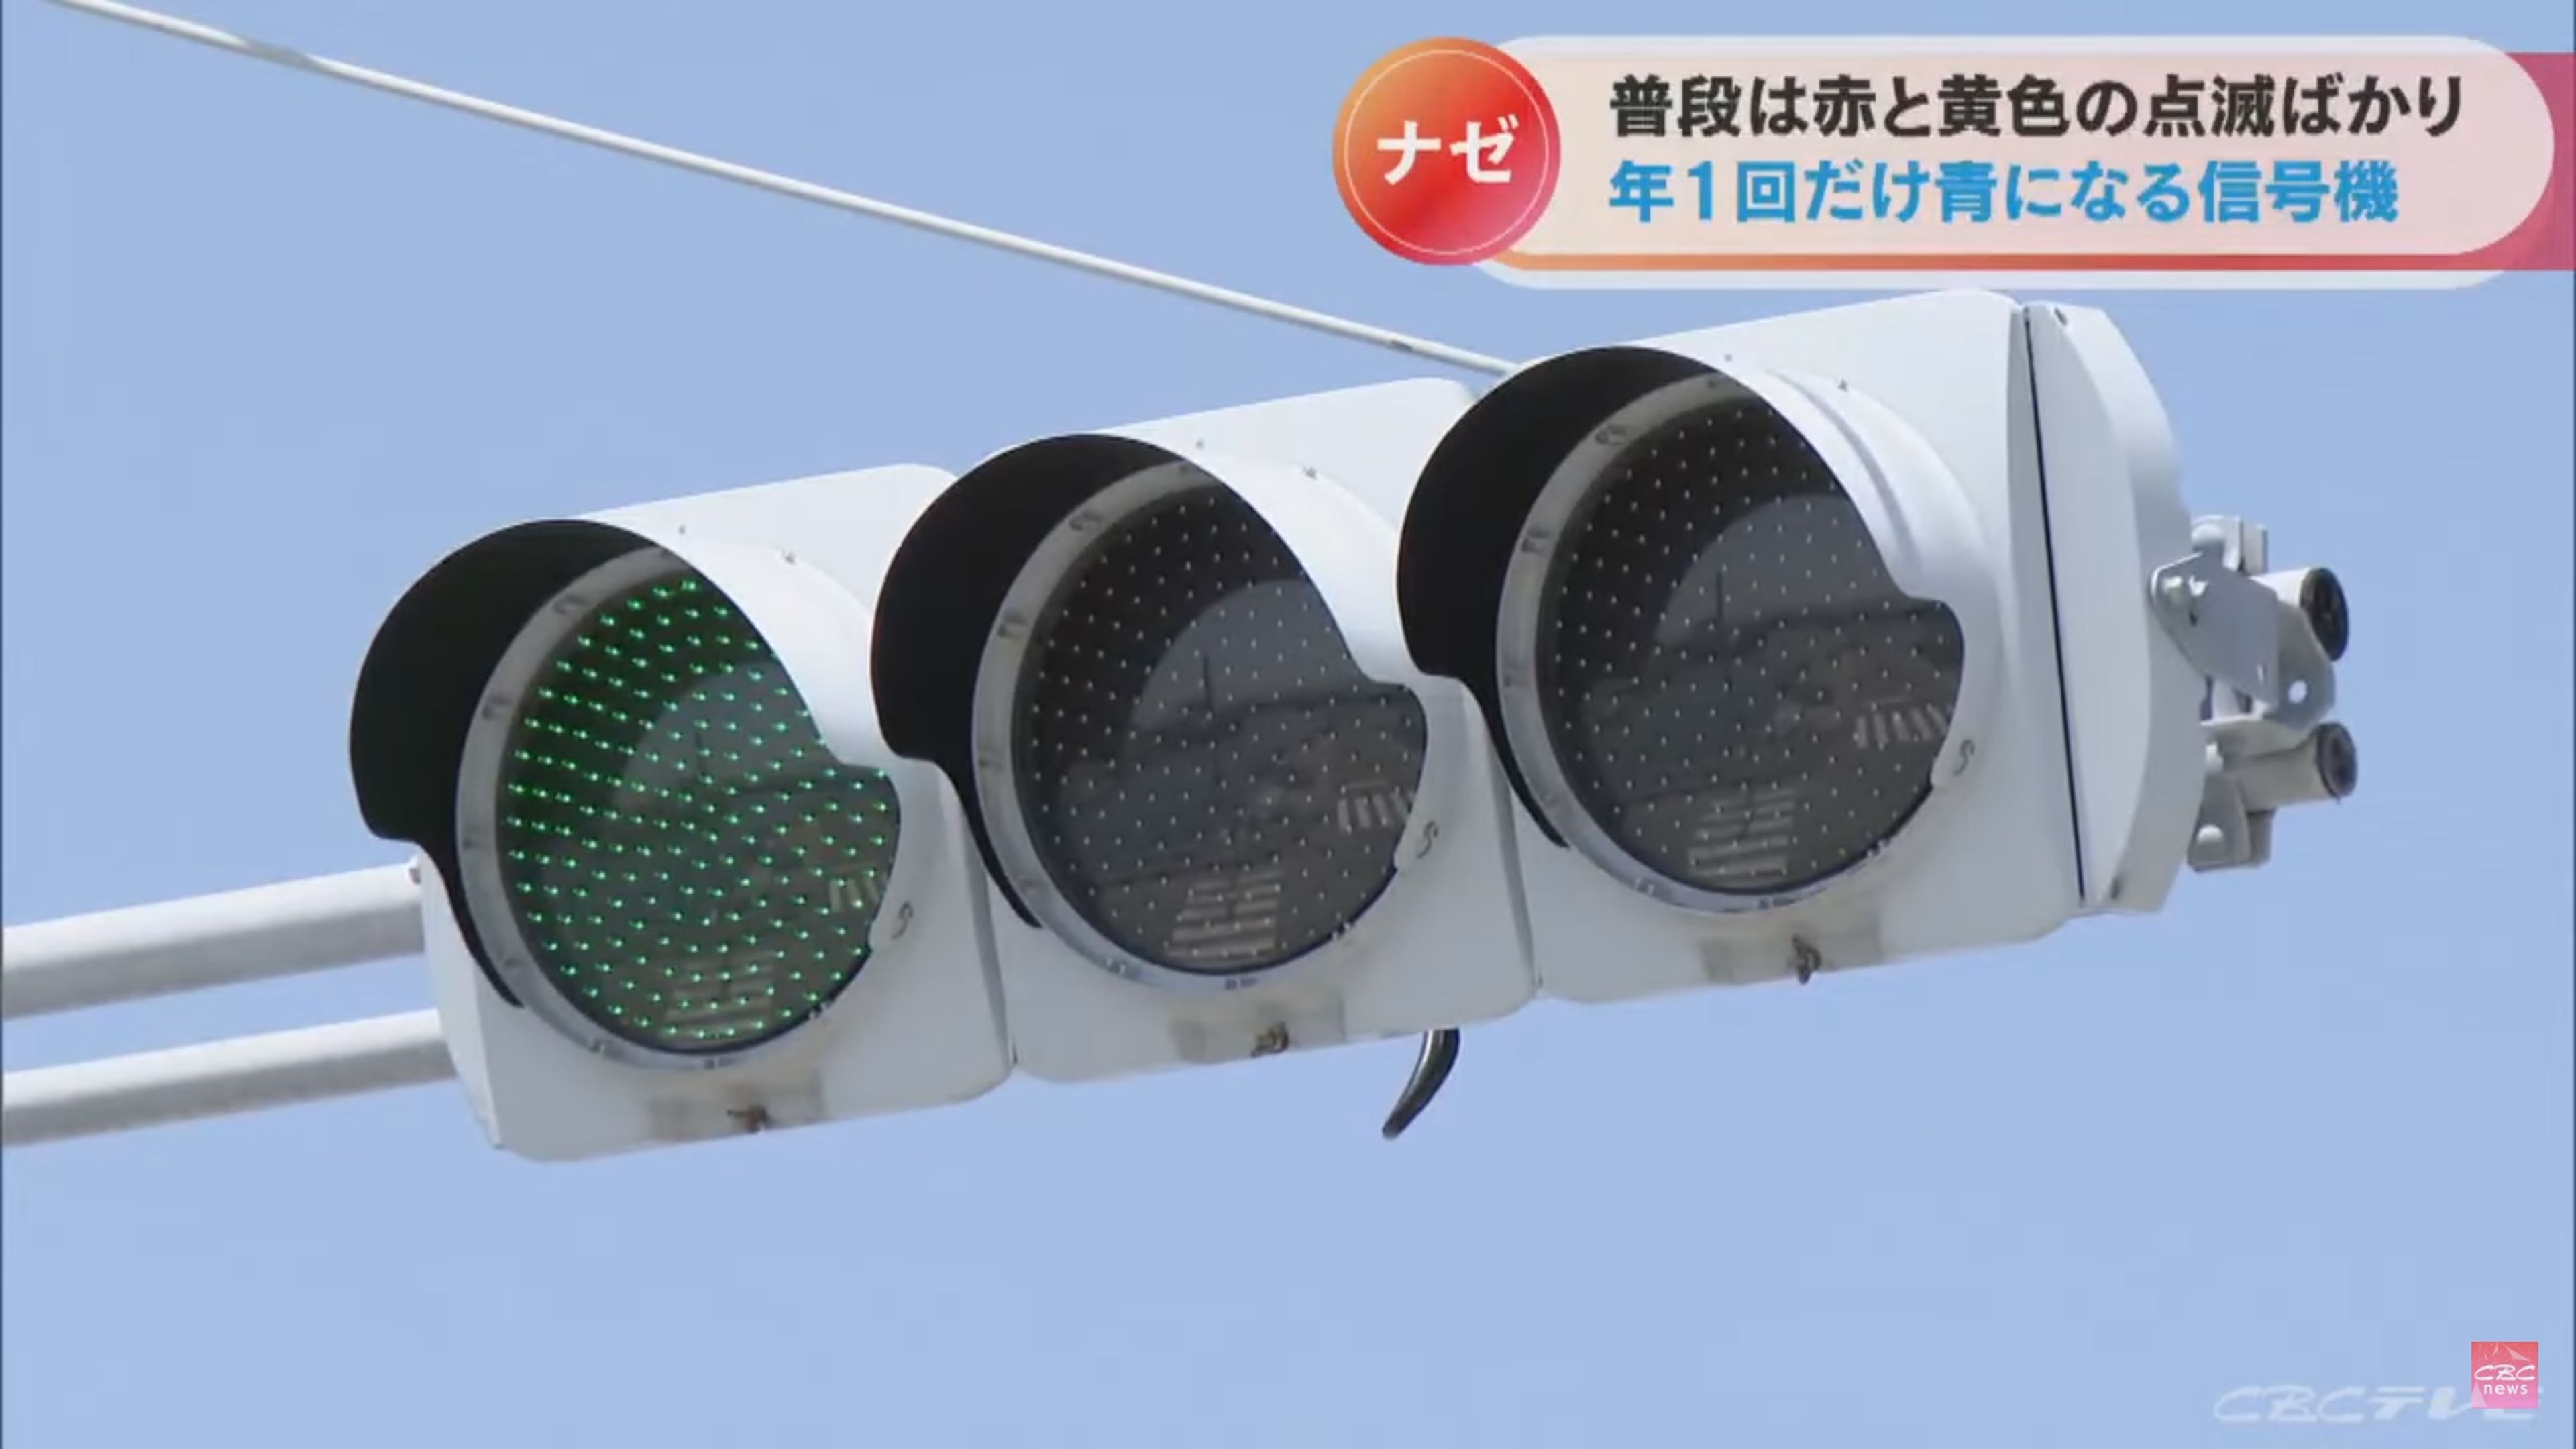 En esta isla japonesa hay un semáforo que solo se pone verde una vez al año